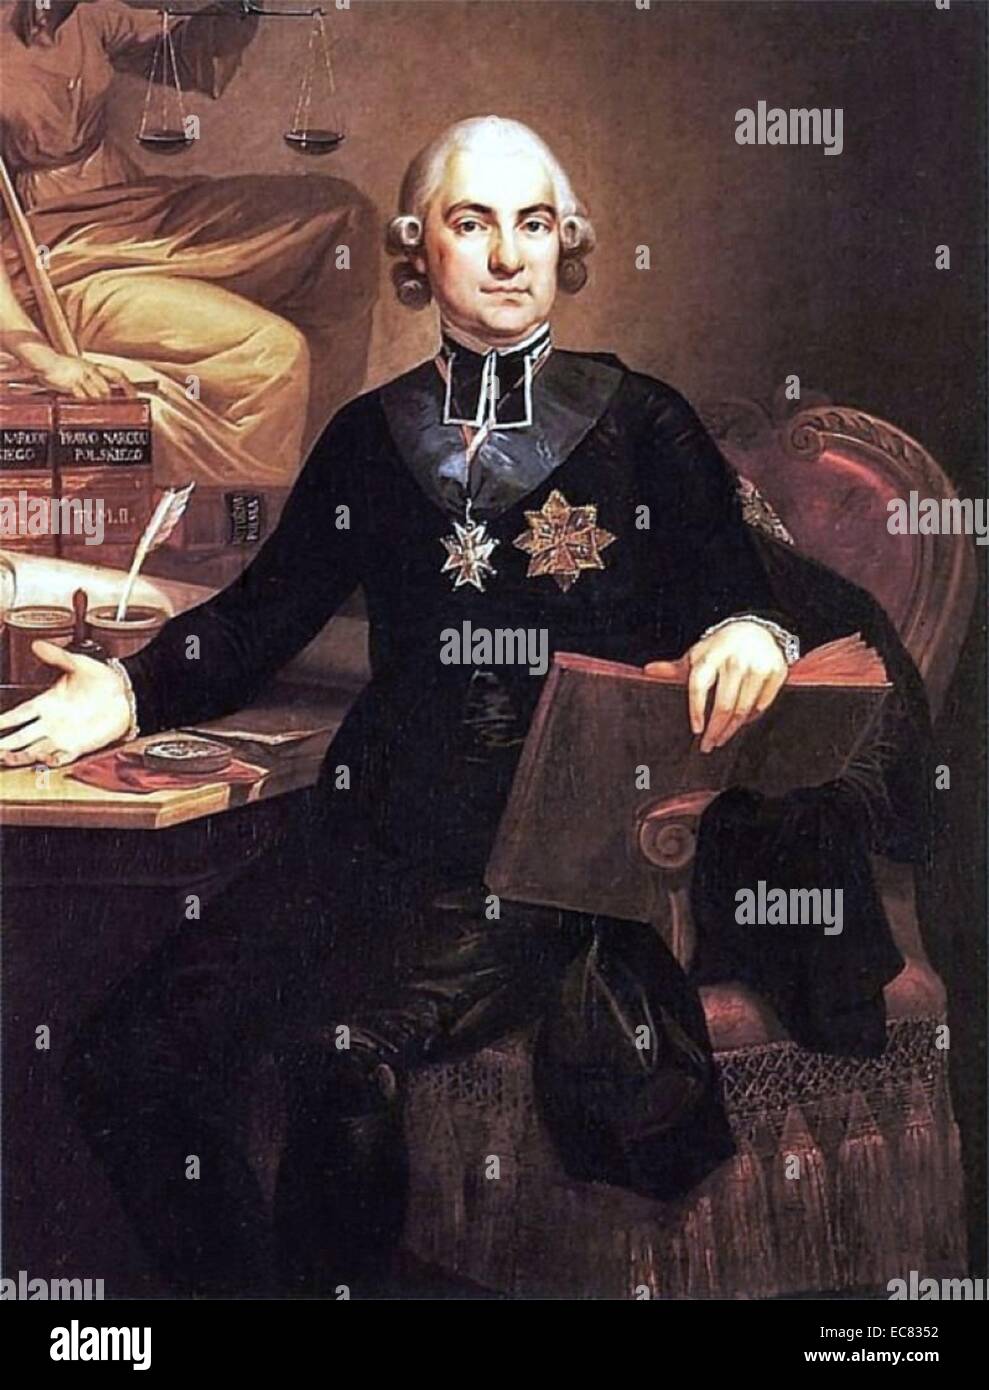 Hugo Stumberg Ko??? Taj (1750-1812), polnischer römisch-katholischer Priester, sozialer und politischer Aktivist, Historiker und Philosoph. Einer der prominentesten Figuren der Aufklärung in Polen. Stockfoto